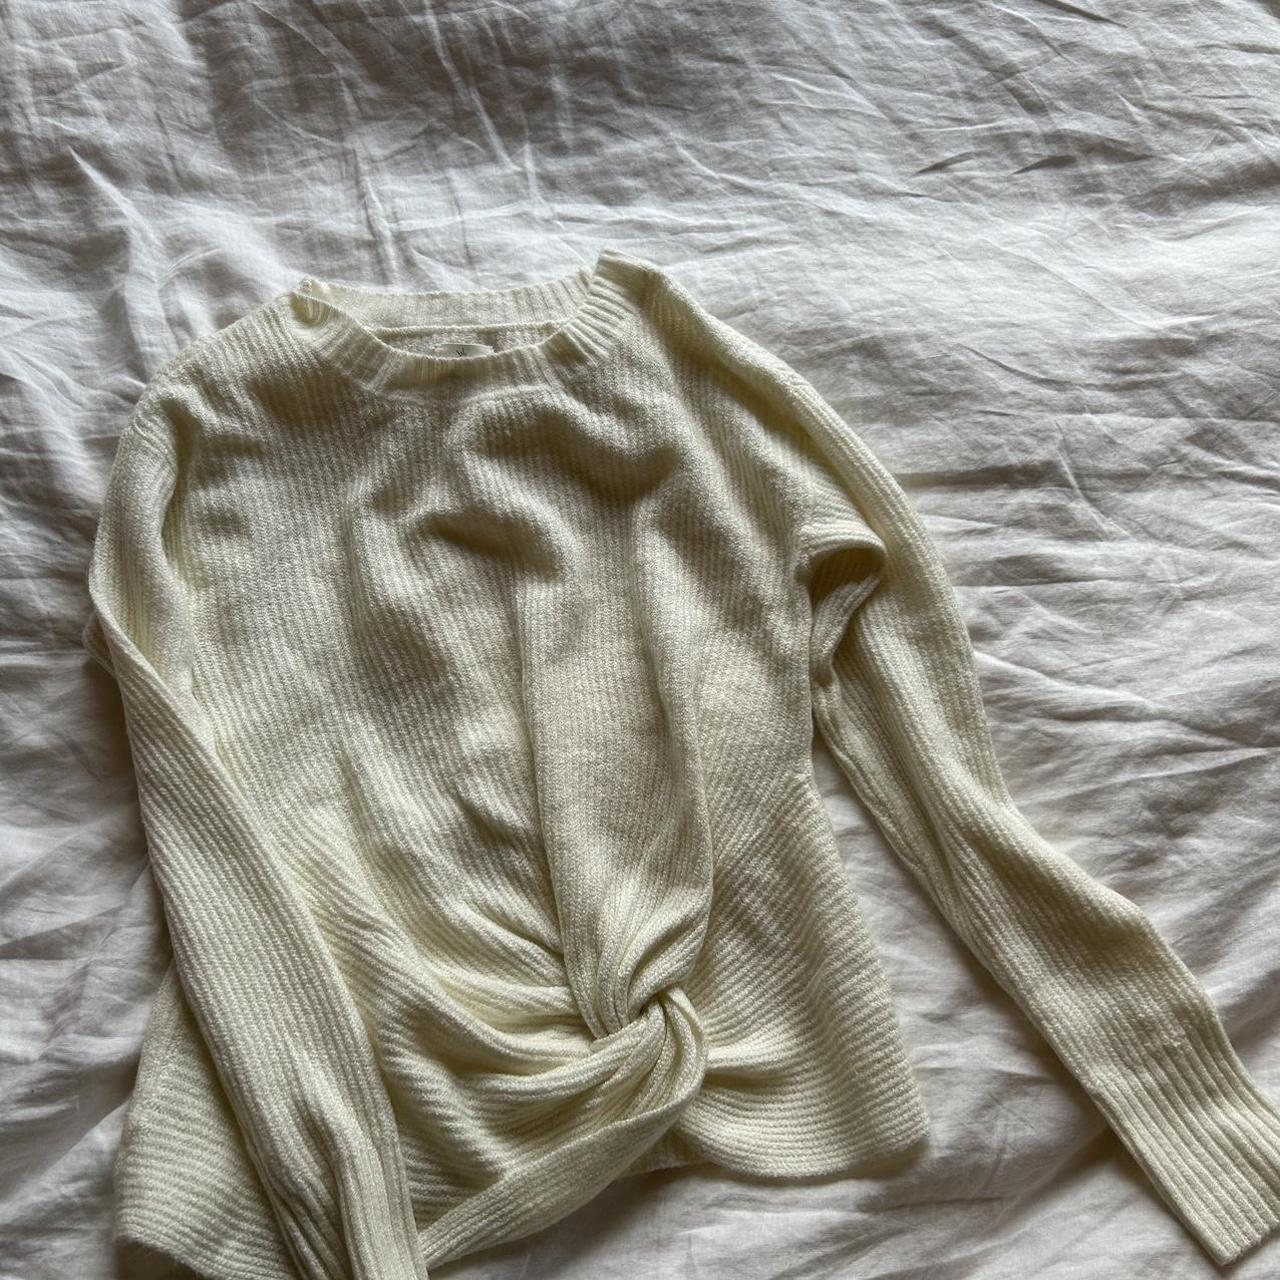 AE Offline cozy cream sweater SO soft and - Depop